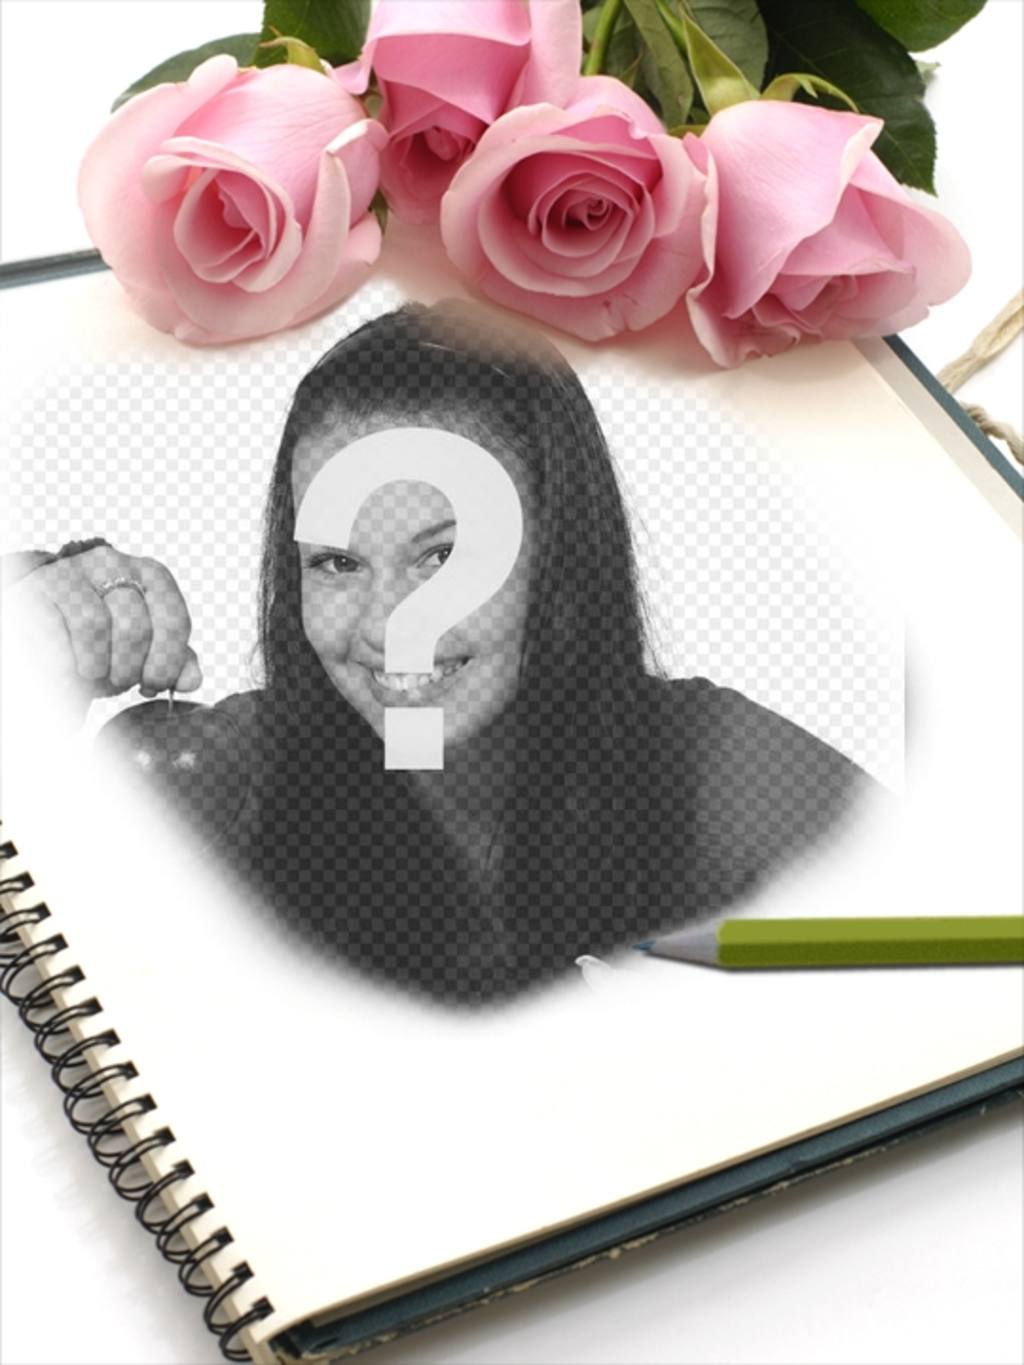 Quadro de rosas para fotos onde você pode adicionar uma imagem em um notebook. ..